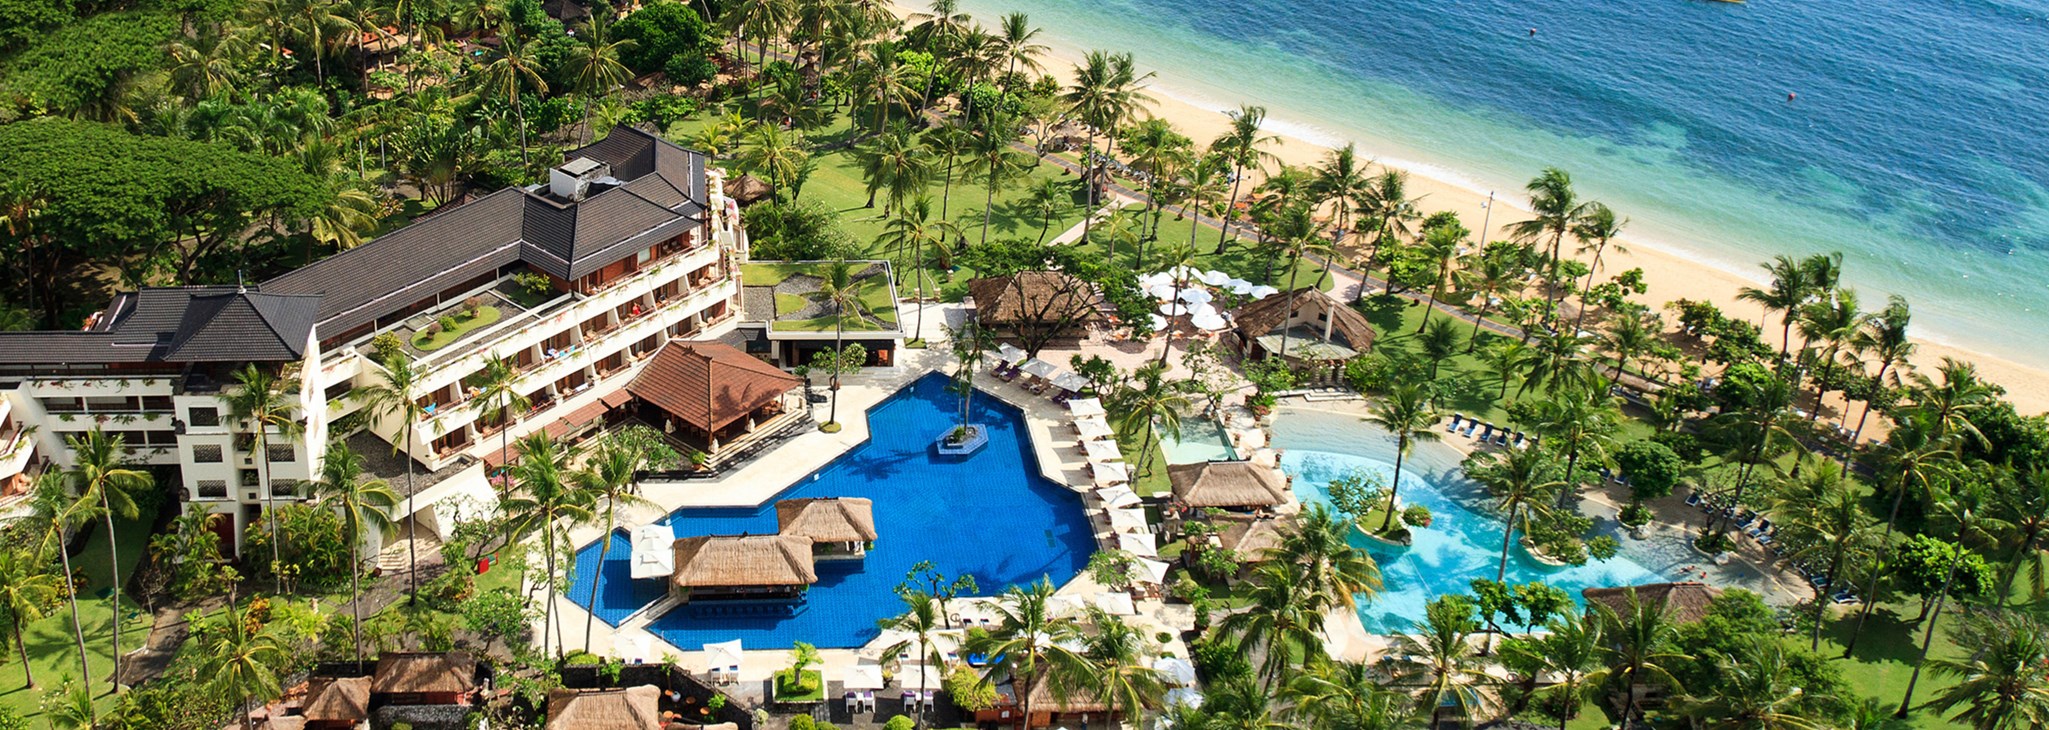 Nusa Dua Beach Hotel & Spa : réservez votre séjour à Bali avec OOVATU.